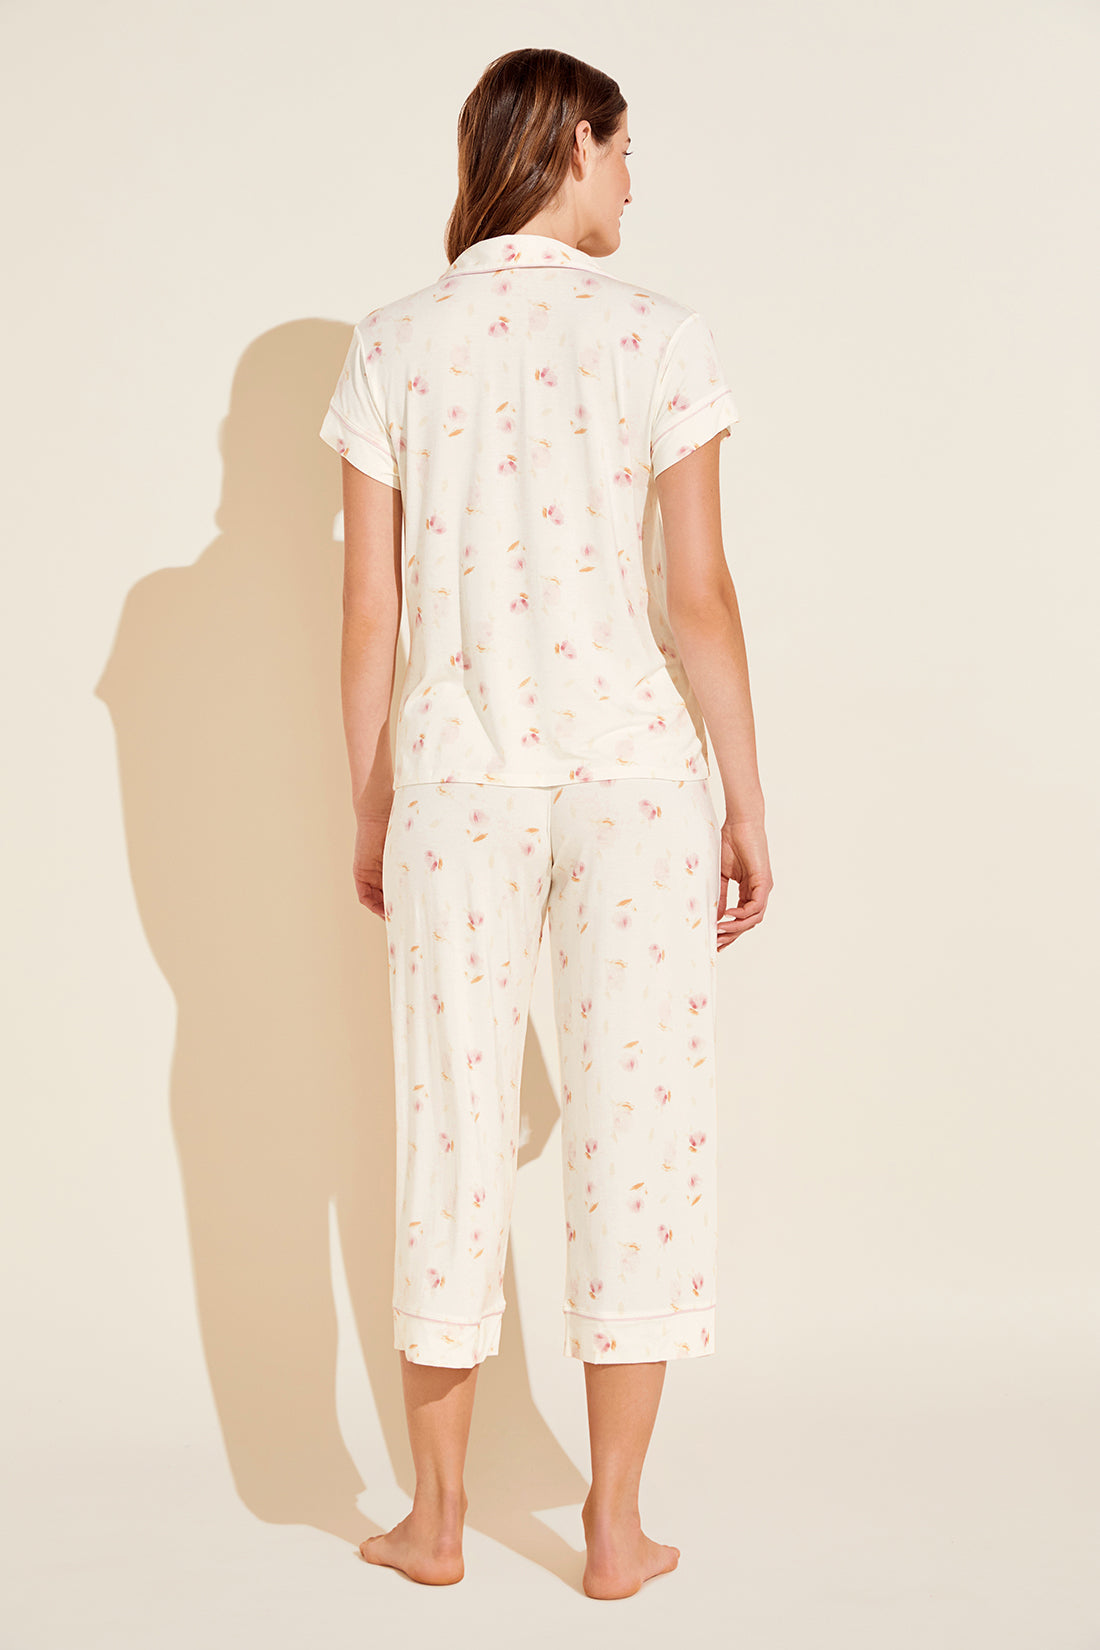 Eberjey Gisele Printed Short Sleeve Cropped Pajama Set